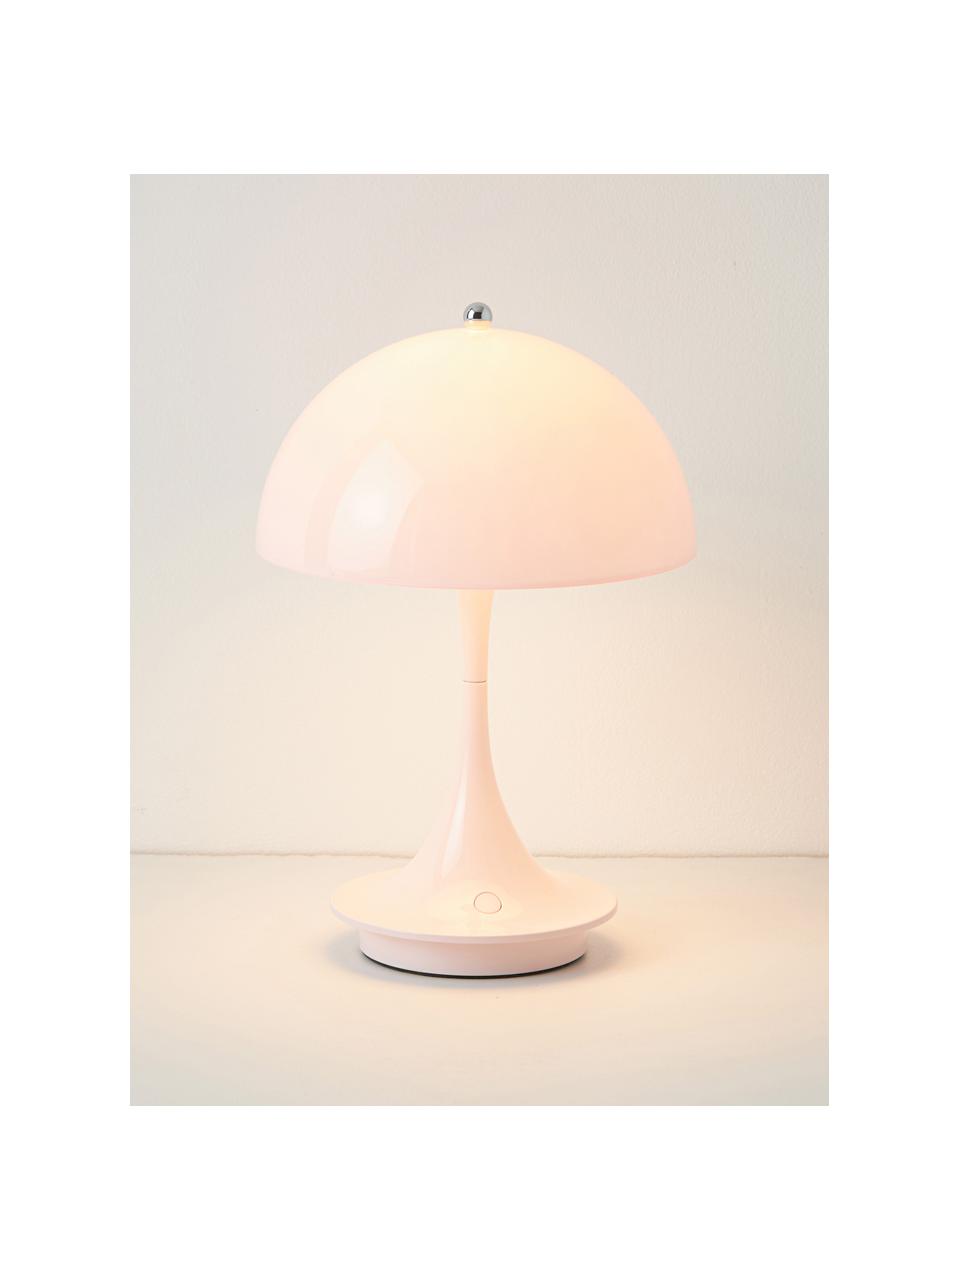 Mobilna lampa stołowa LED z funkcją przyciemniania Panthella, W 24 cm, Stelaż: aluminium powlekane, Jasnoróżowe szkło akrylowe, Ø 16 x 24 cm